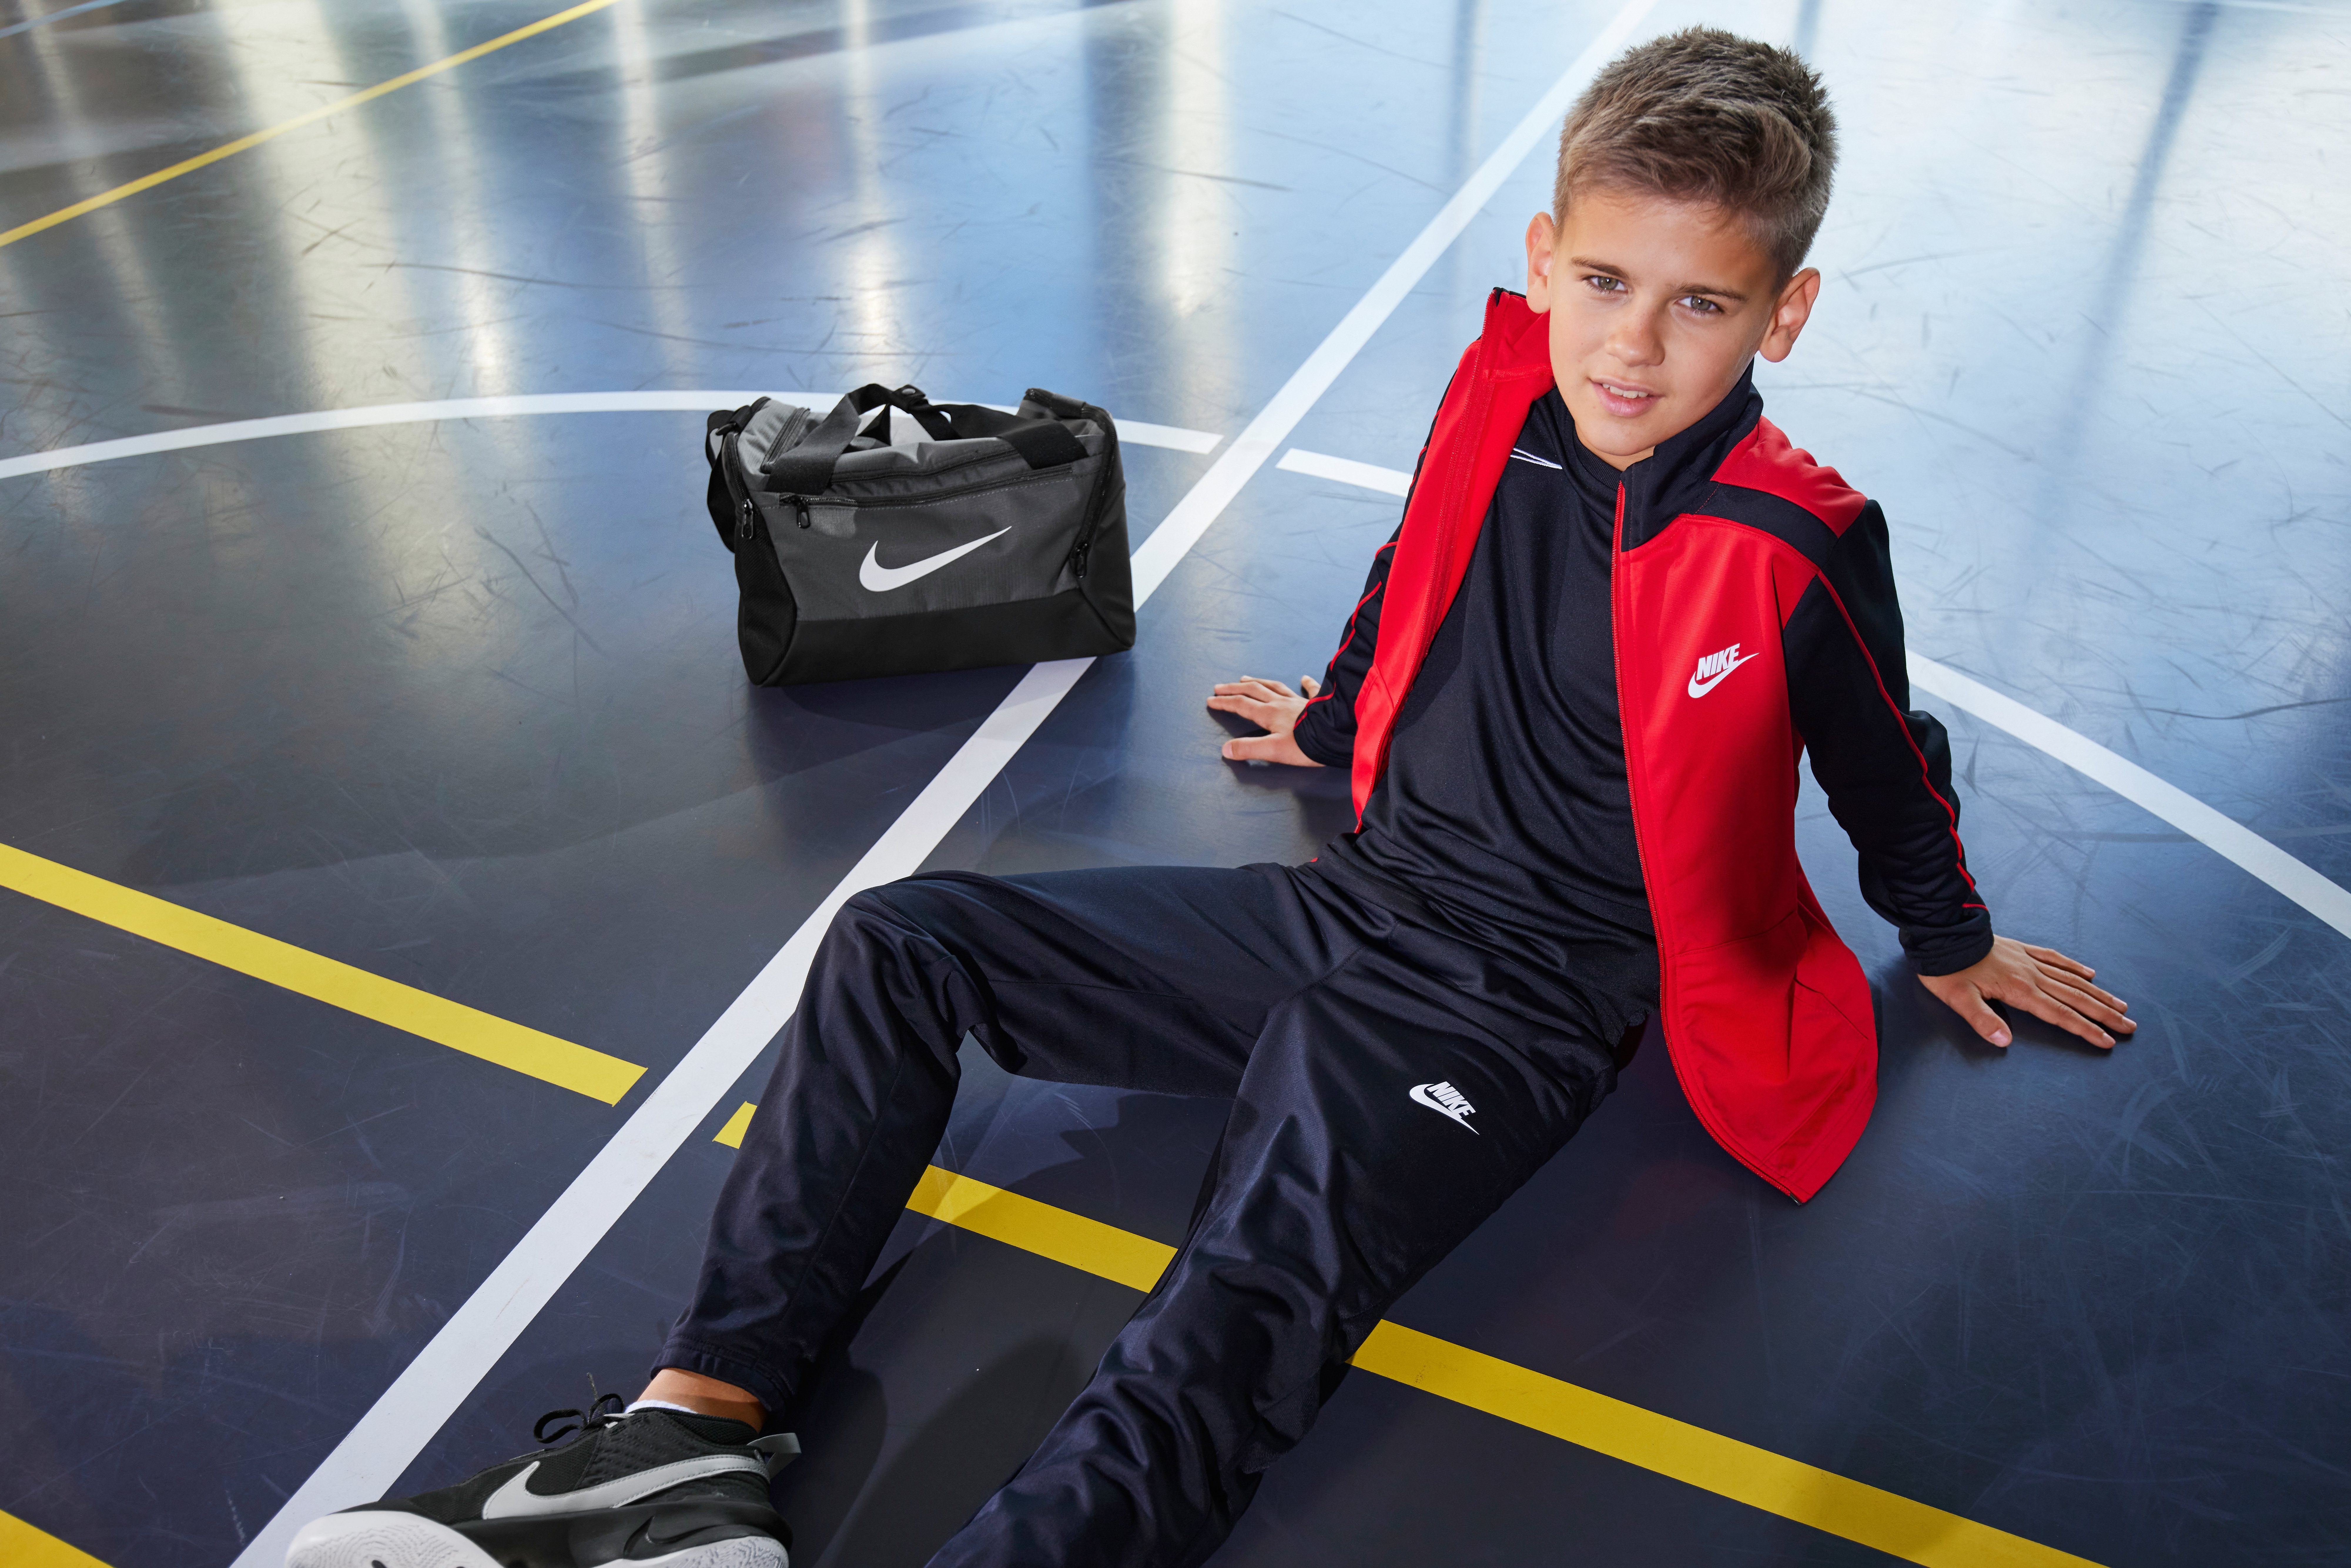 Nike Sportswear Tracksuit Trainingsanzug schwarz-rot Big Kids'